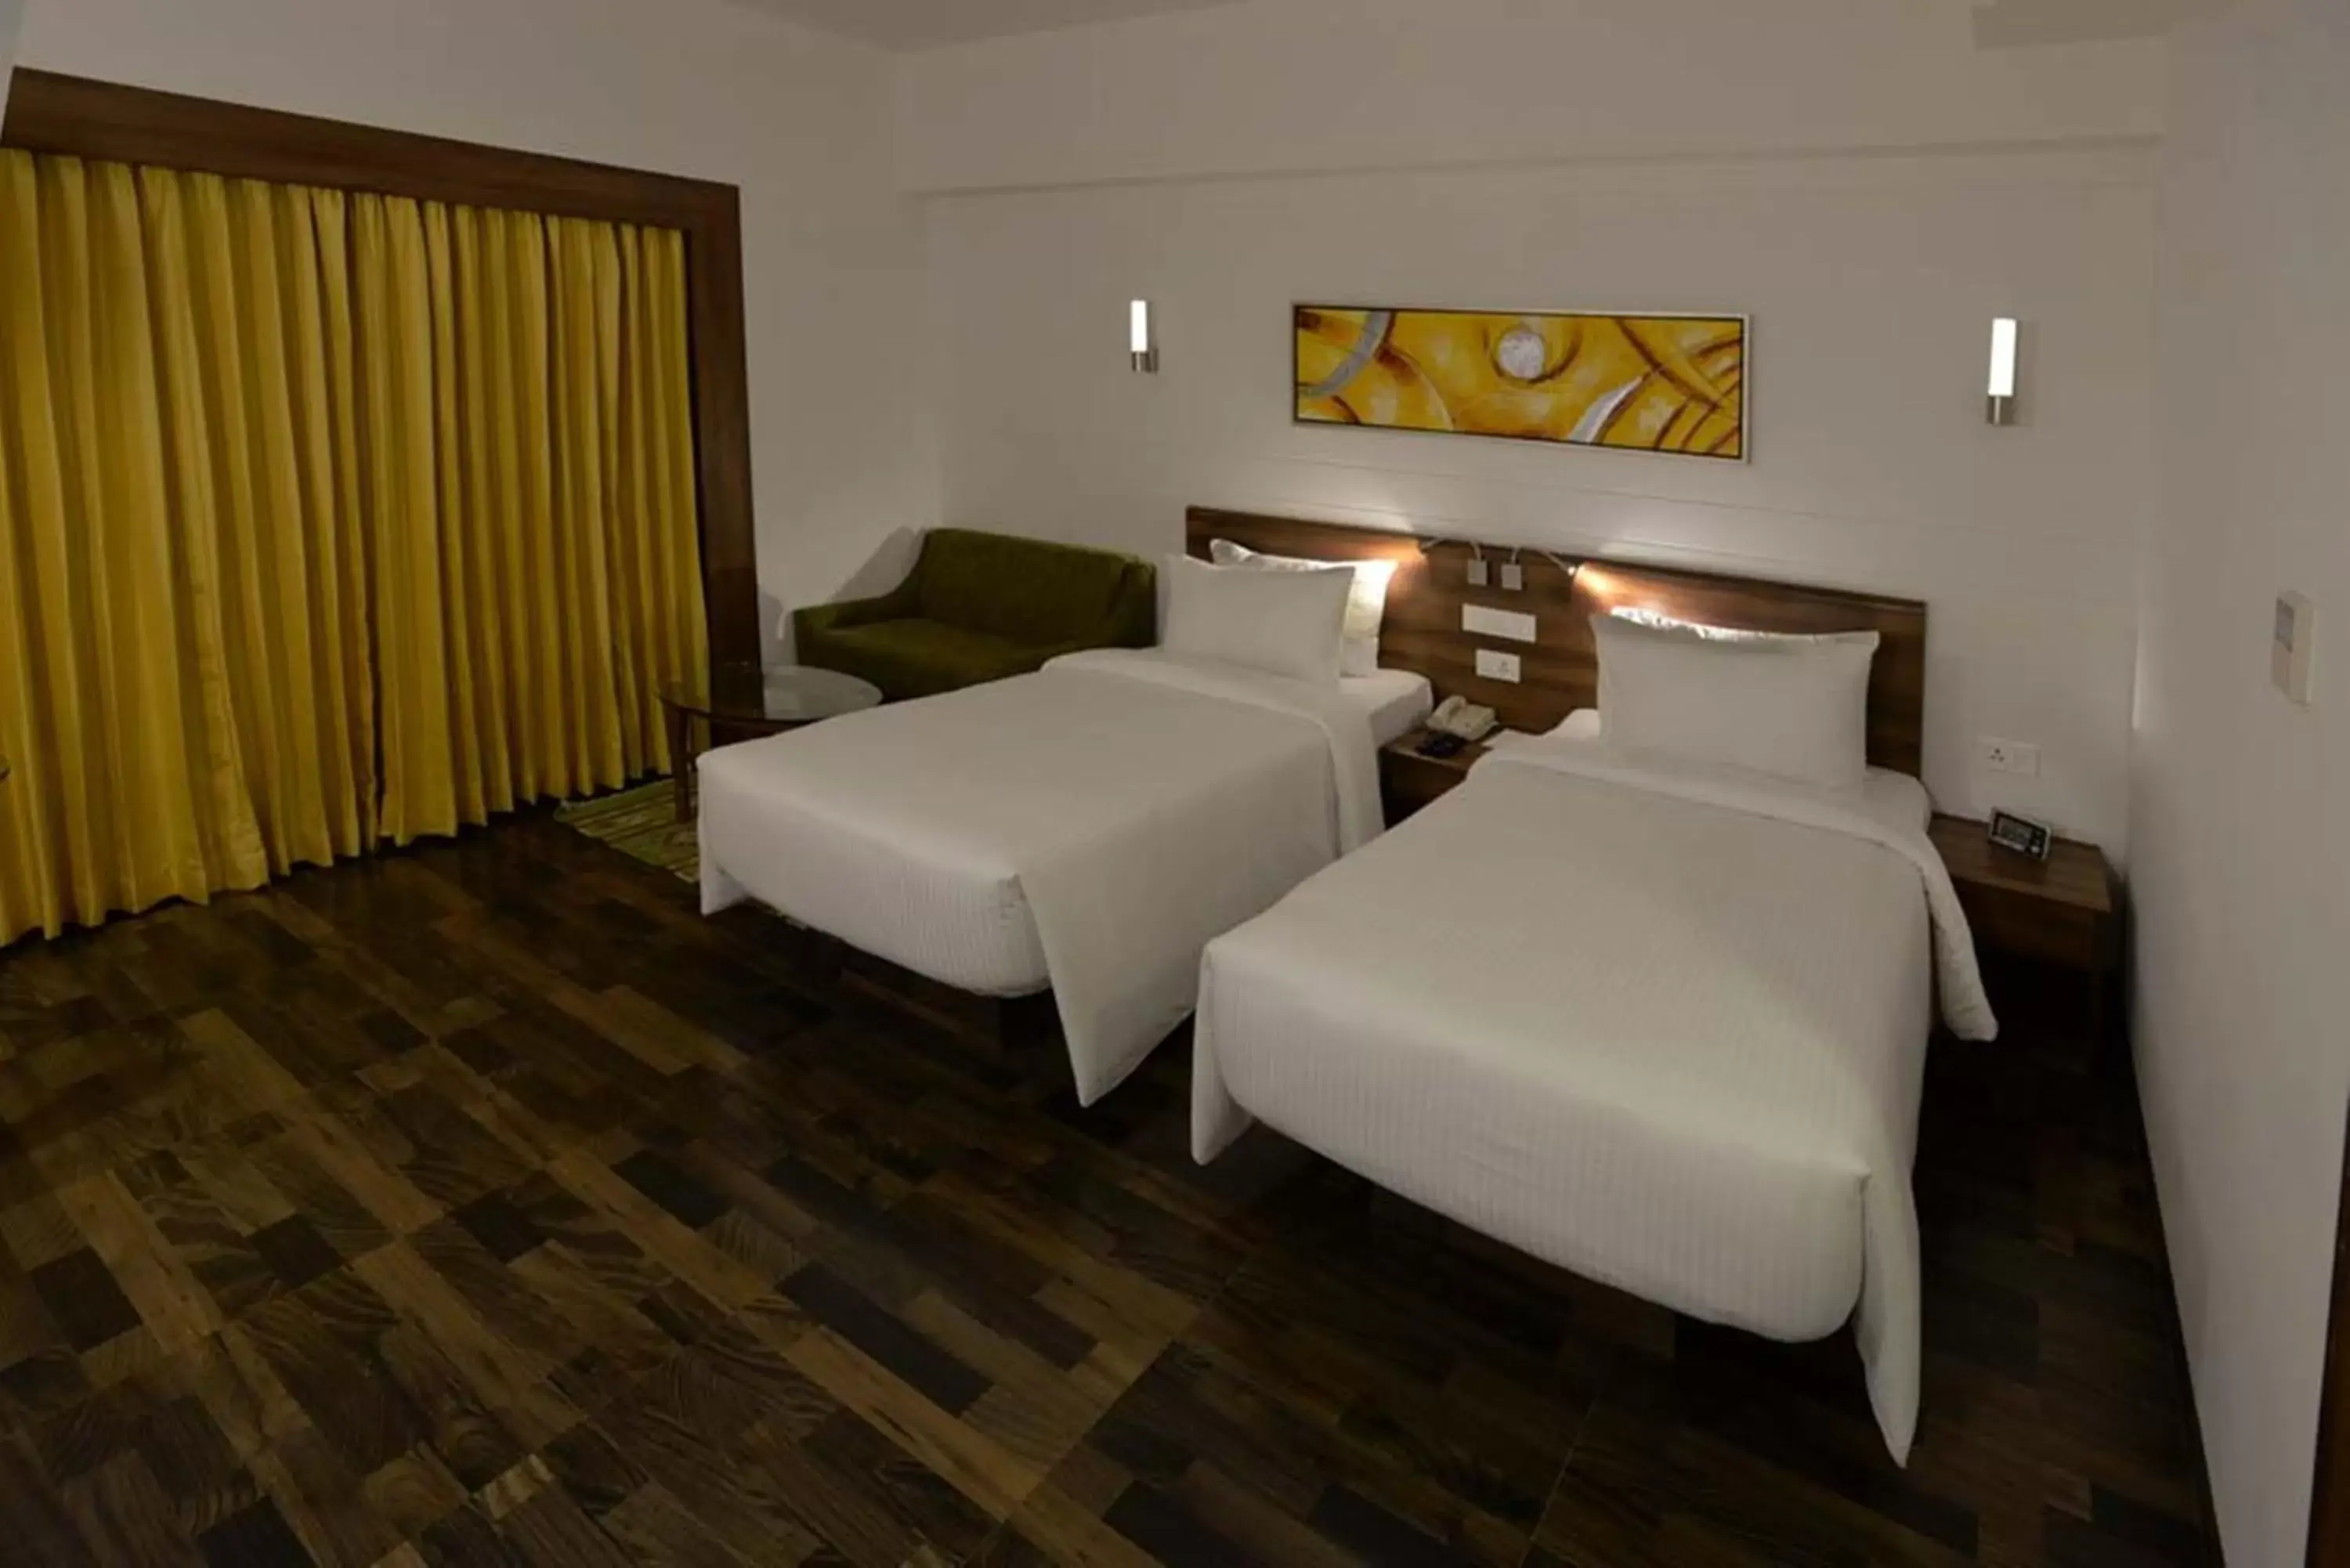 Bedroom, Bed in Lemon Tree Hotel Coimbatore